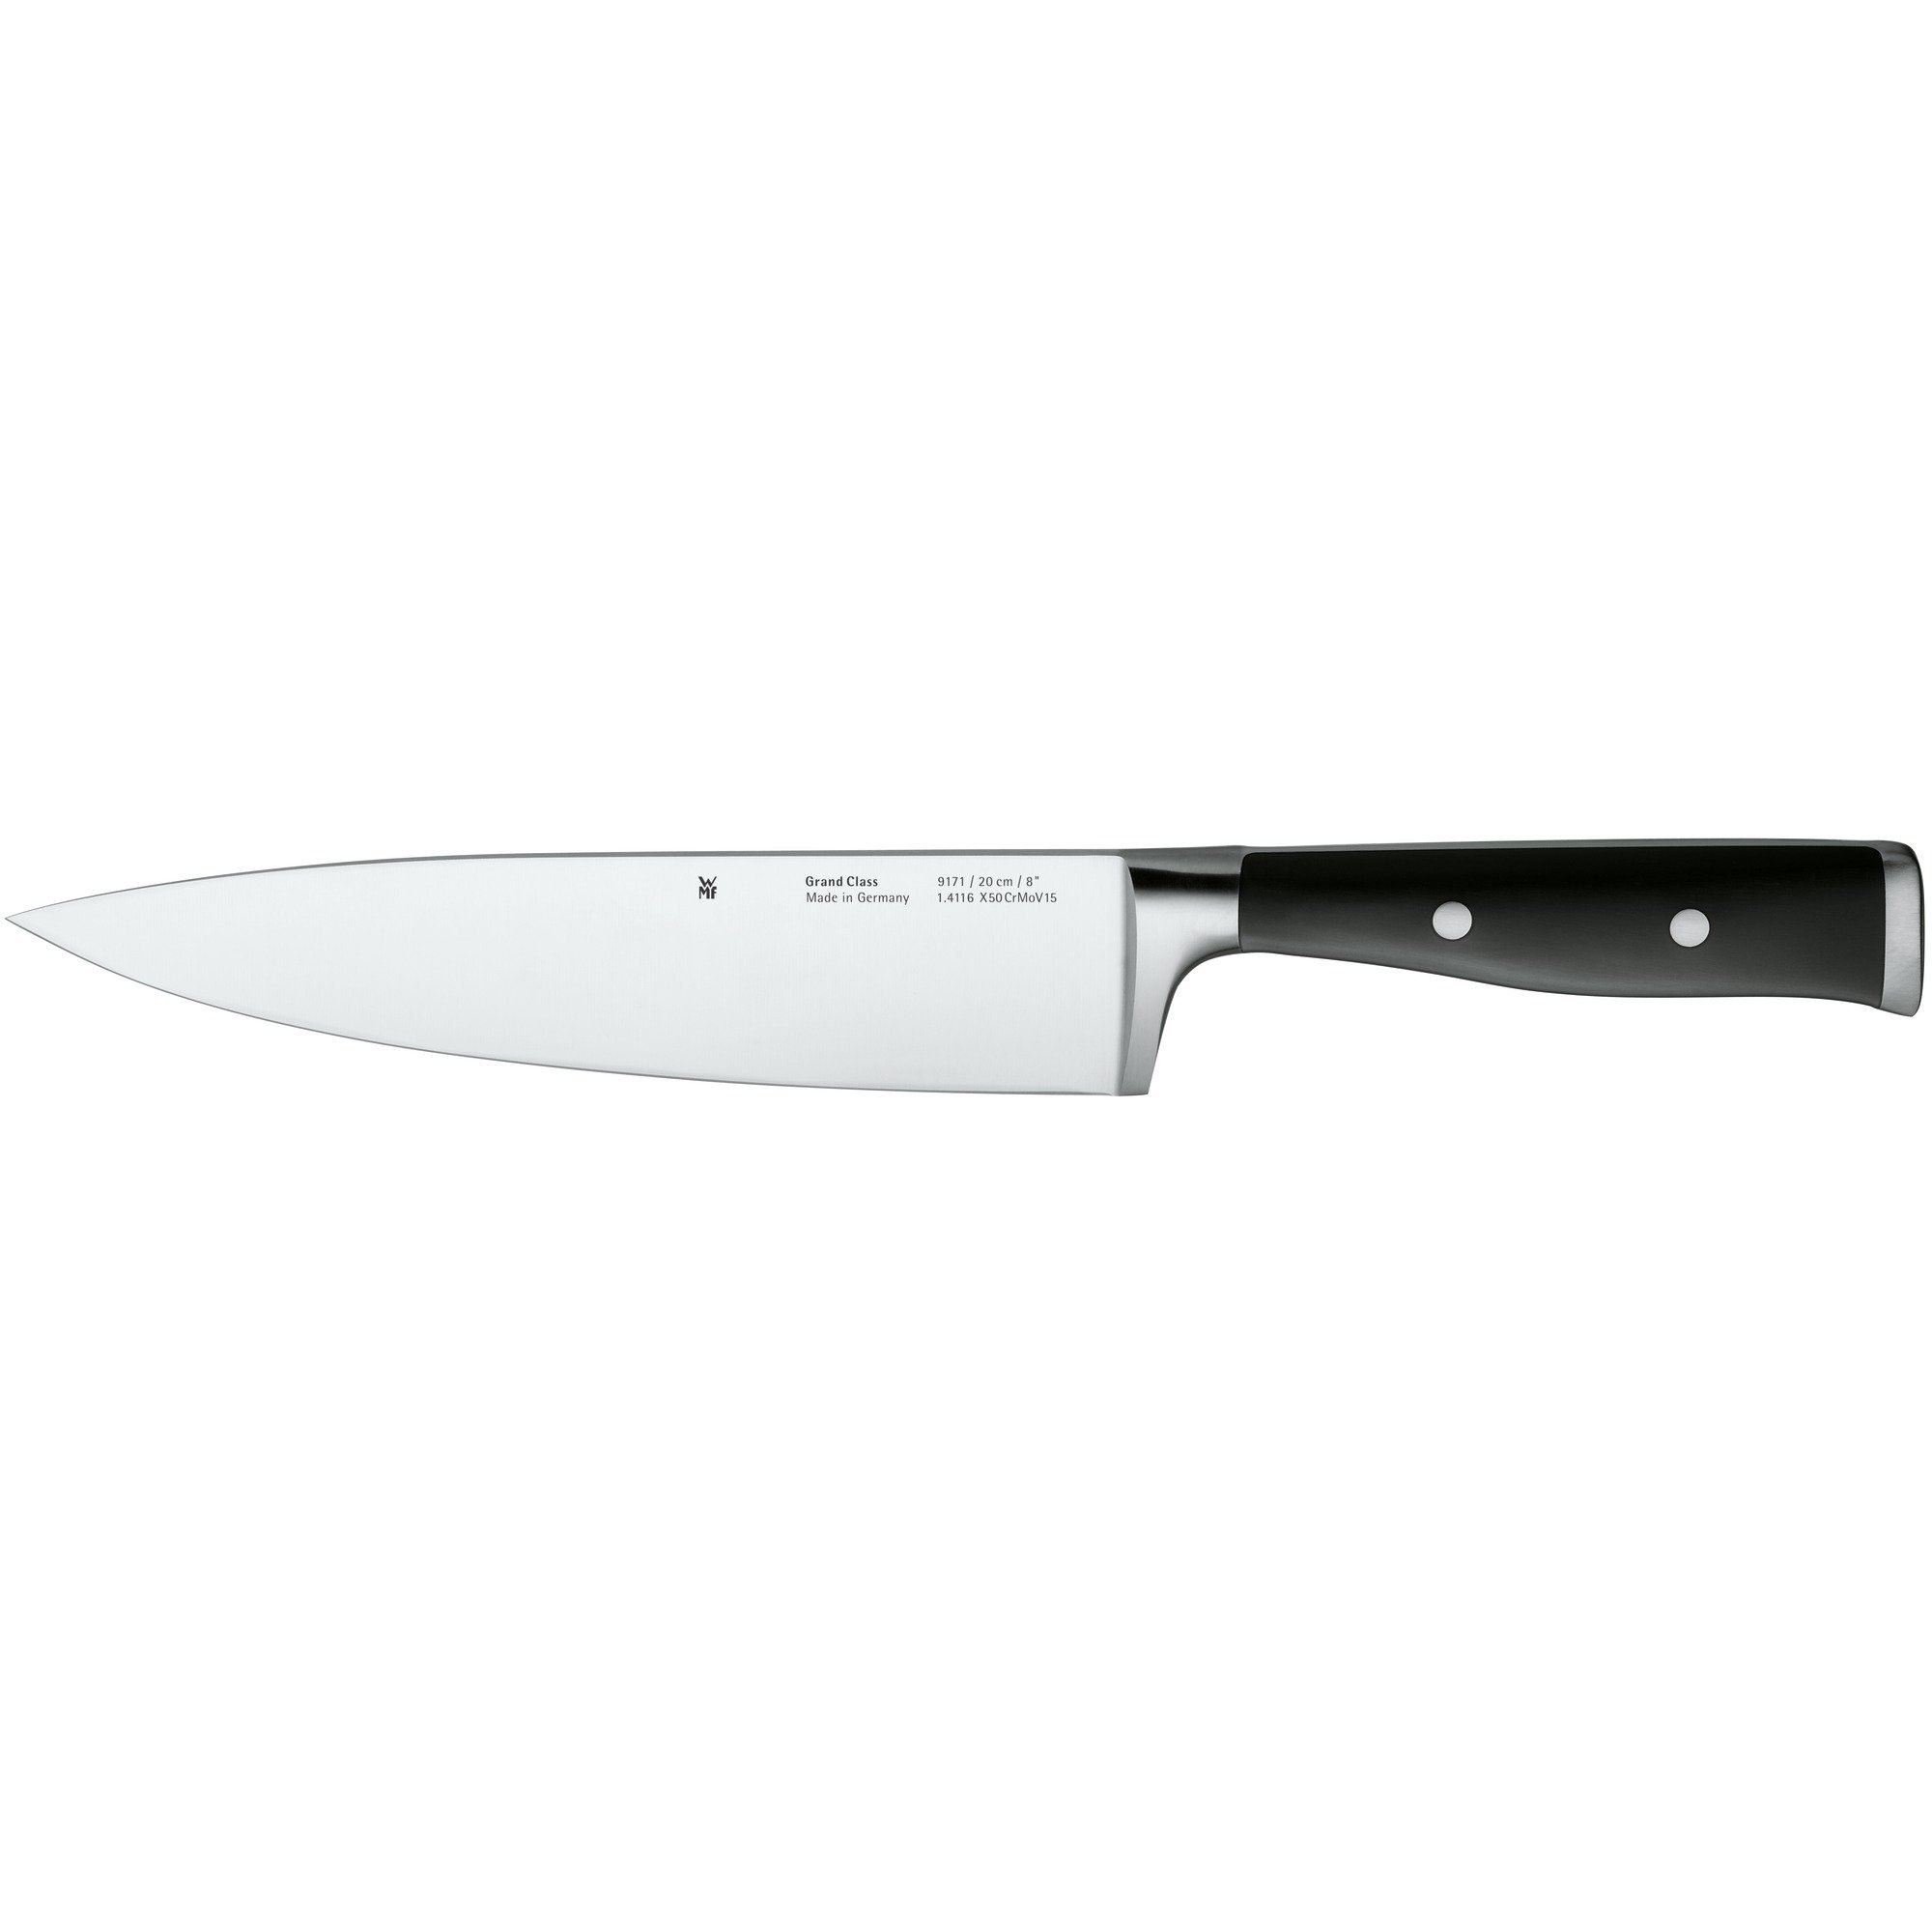 WMF Kochmesser Grand Class, Messer geschmiedet, Performance Cut, Spezialklingenstahl, Klinge 20 cm